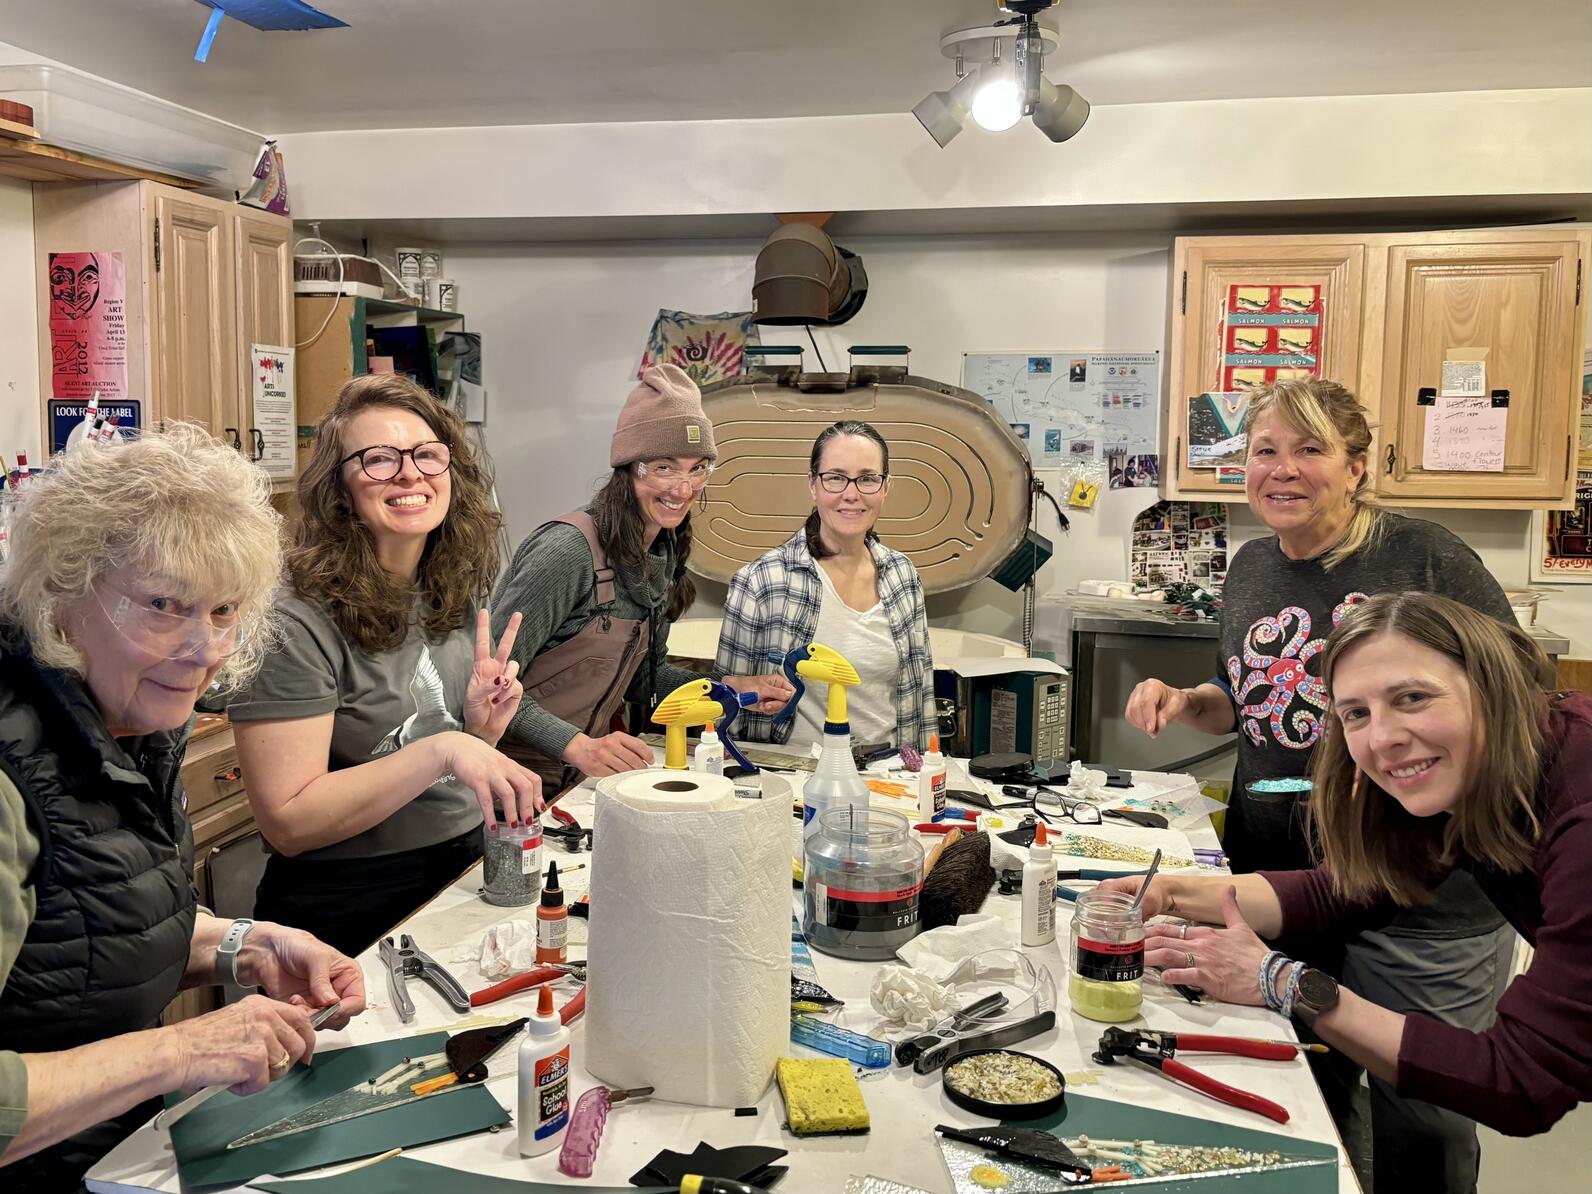 Six women standing in art studio smiling